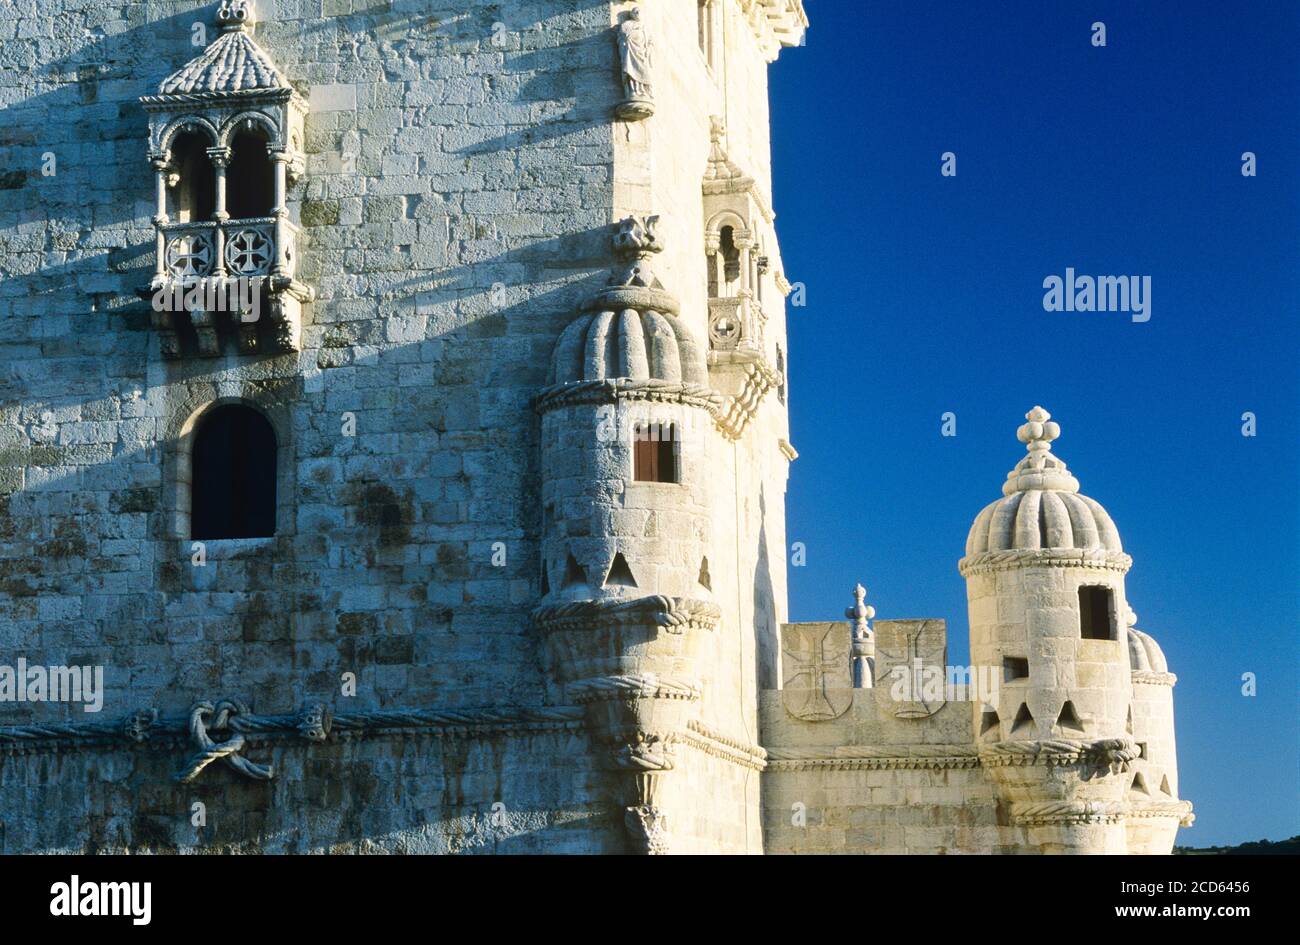 Vista exterior de la torre Belem, Lisboa, Portugal Foto de stock